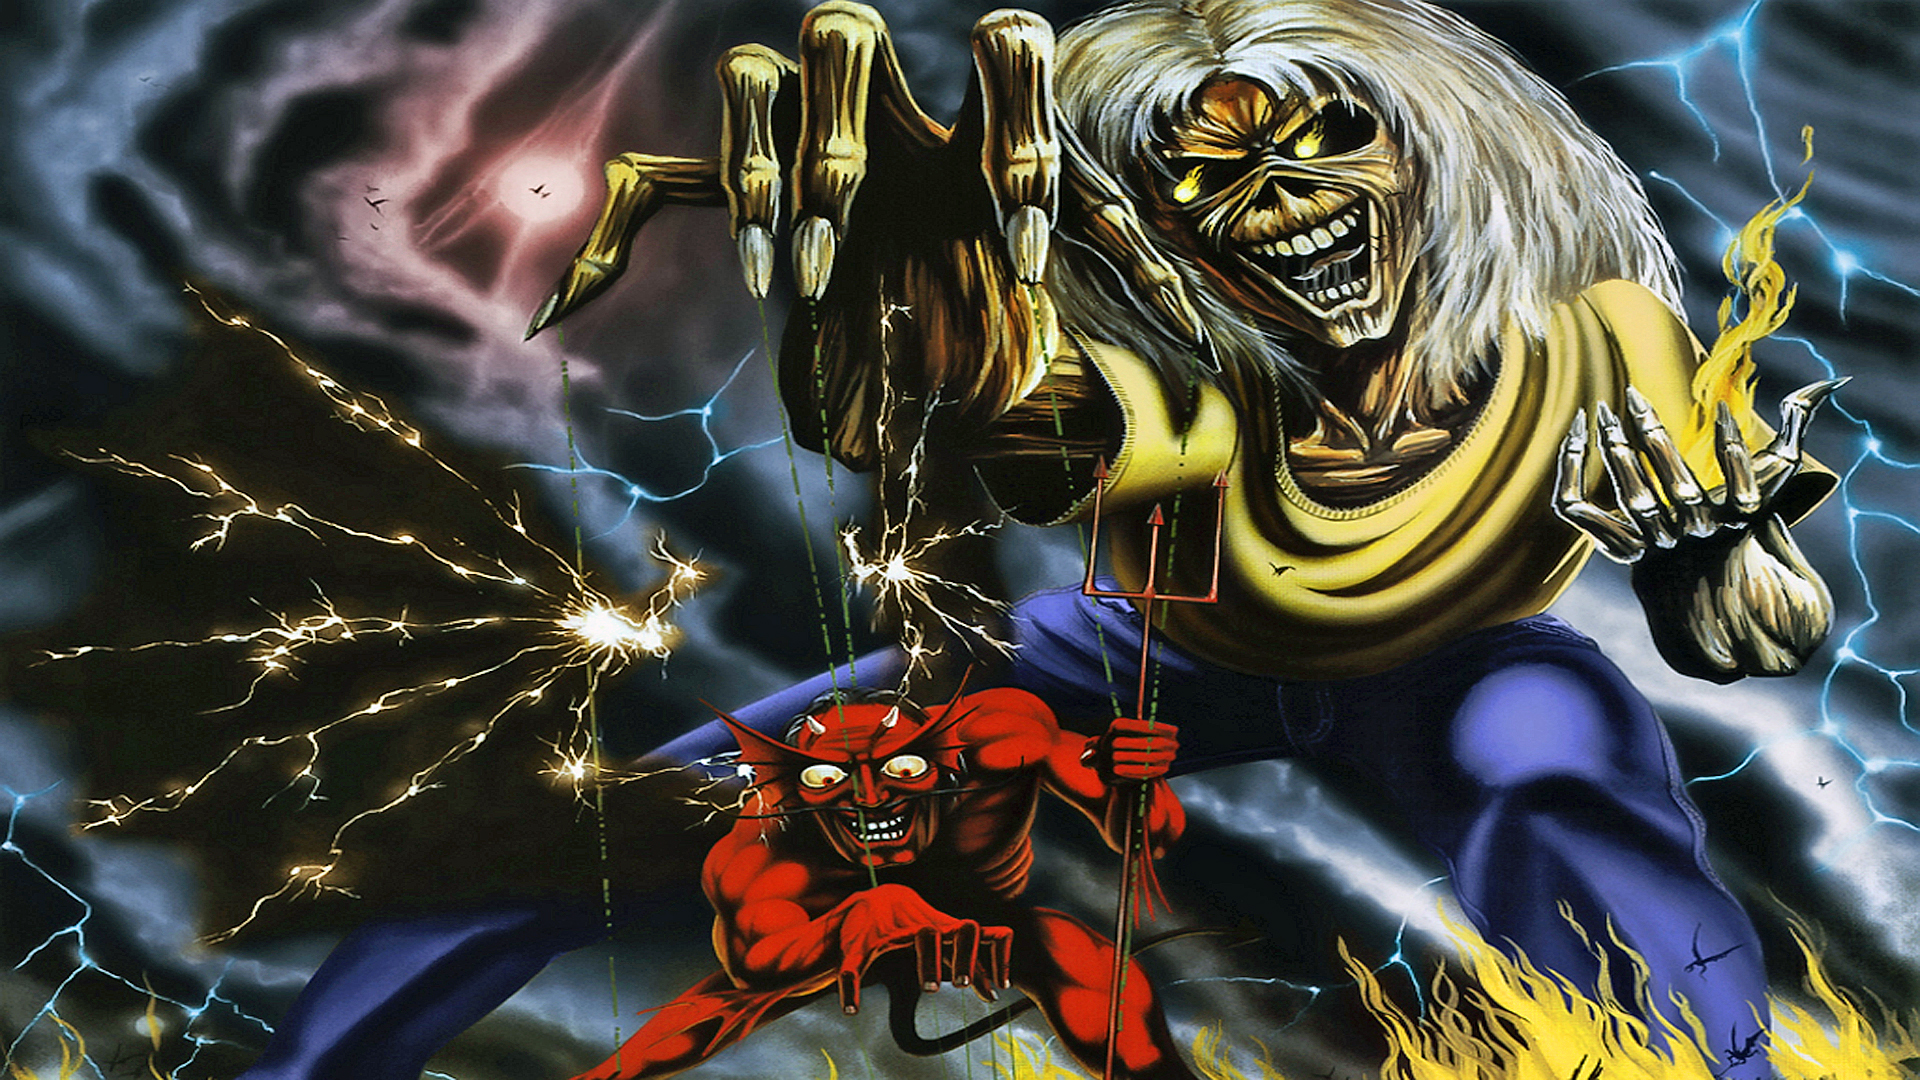 Iron Maiden Heavy Metal Dark Album Cover Eddie Fs Wallpaper Background